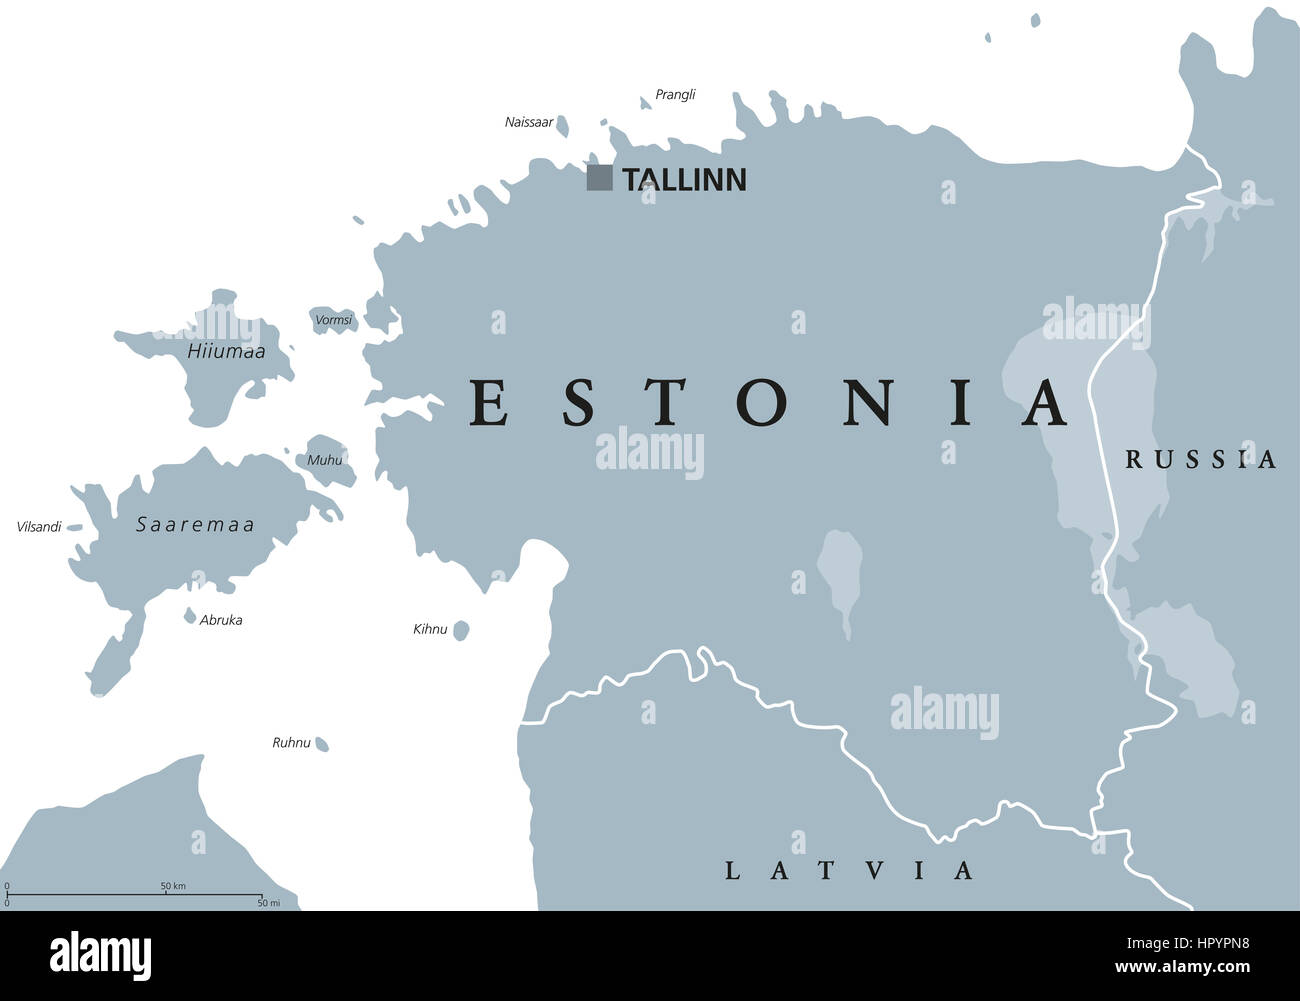 Carte politique de l'Estonie avec capitale de l'Estonie, les frontières nationales et les pays voisins. Au nord de l'Europe, l'un des trois Etats baltes. Banque D'Images